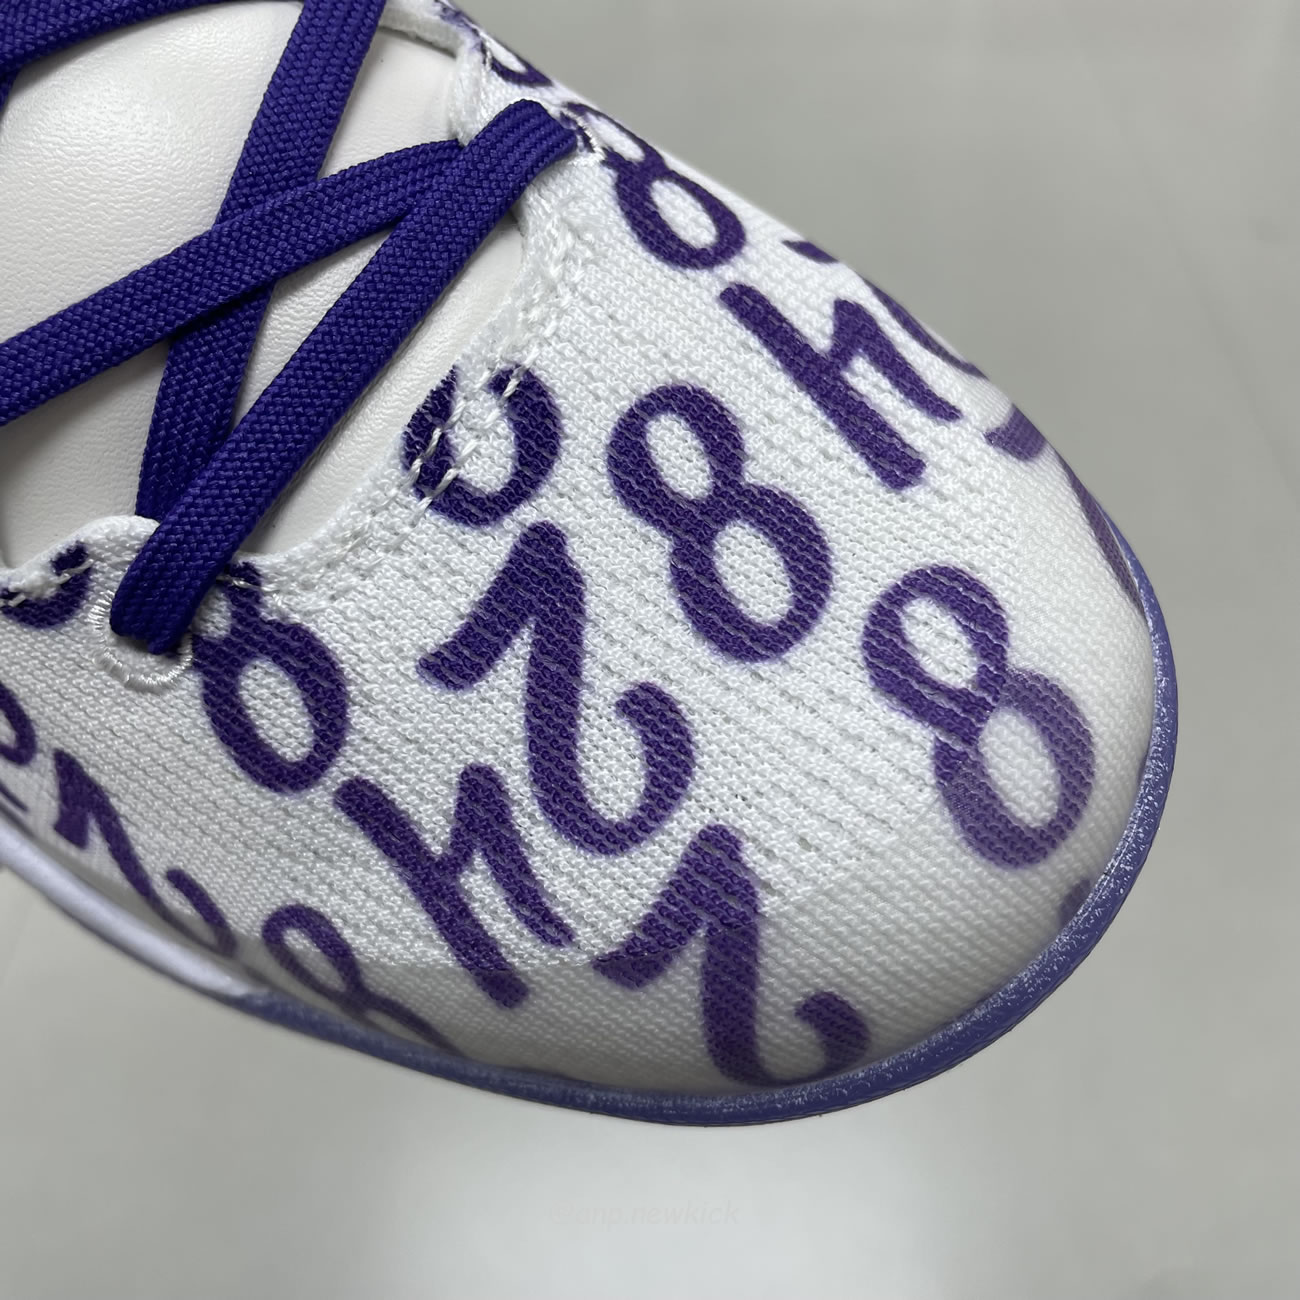 Nike Kobe 8 Protro Court Purple Fq3549 100 (11) - newkick.org